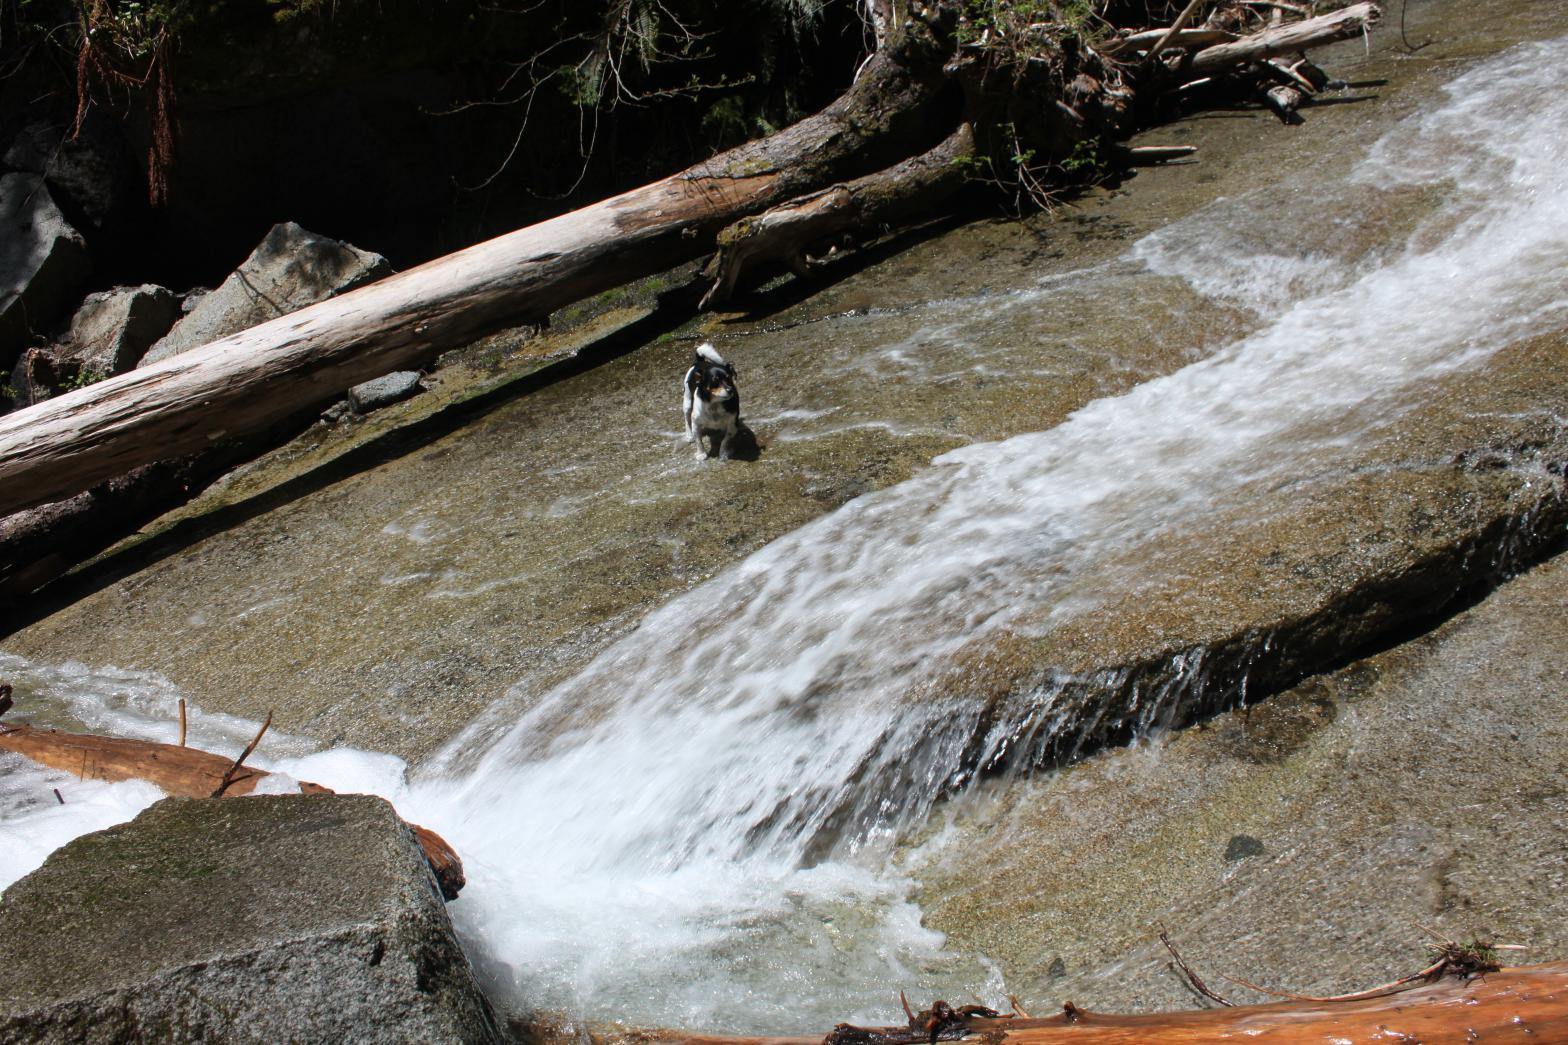 Mongo cooling down at Devils Peak Falls